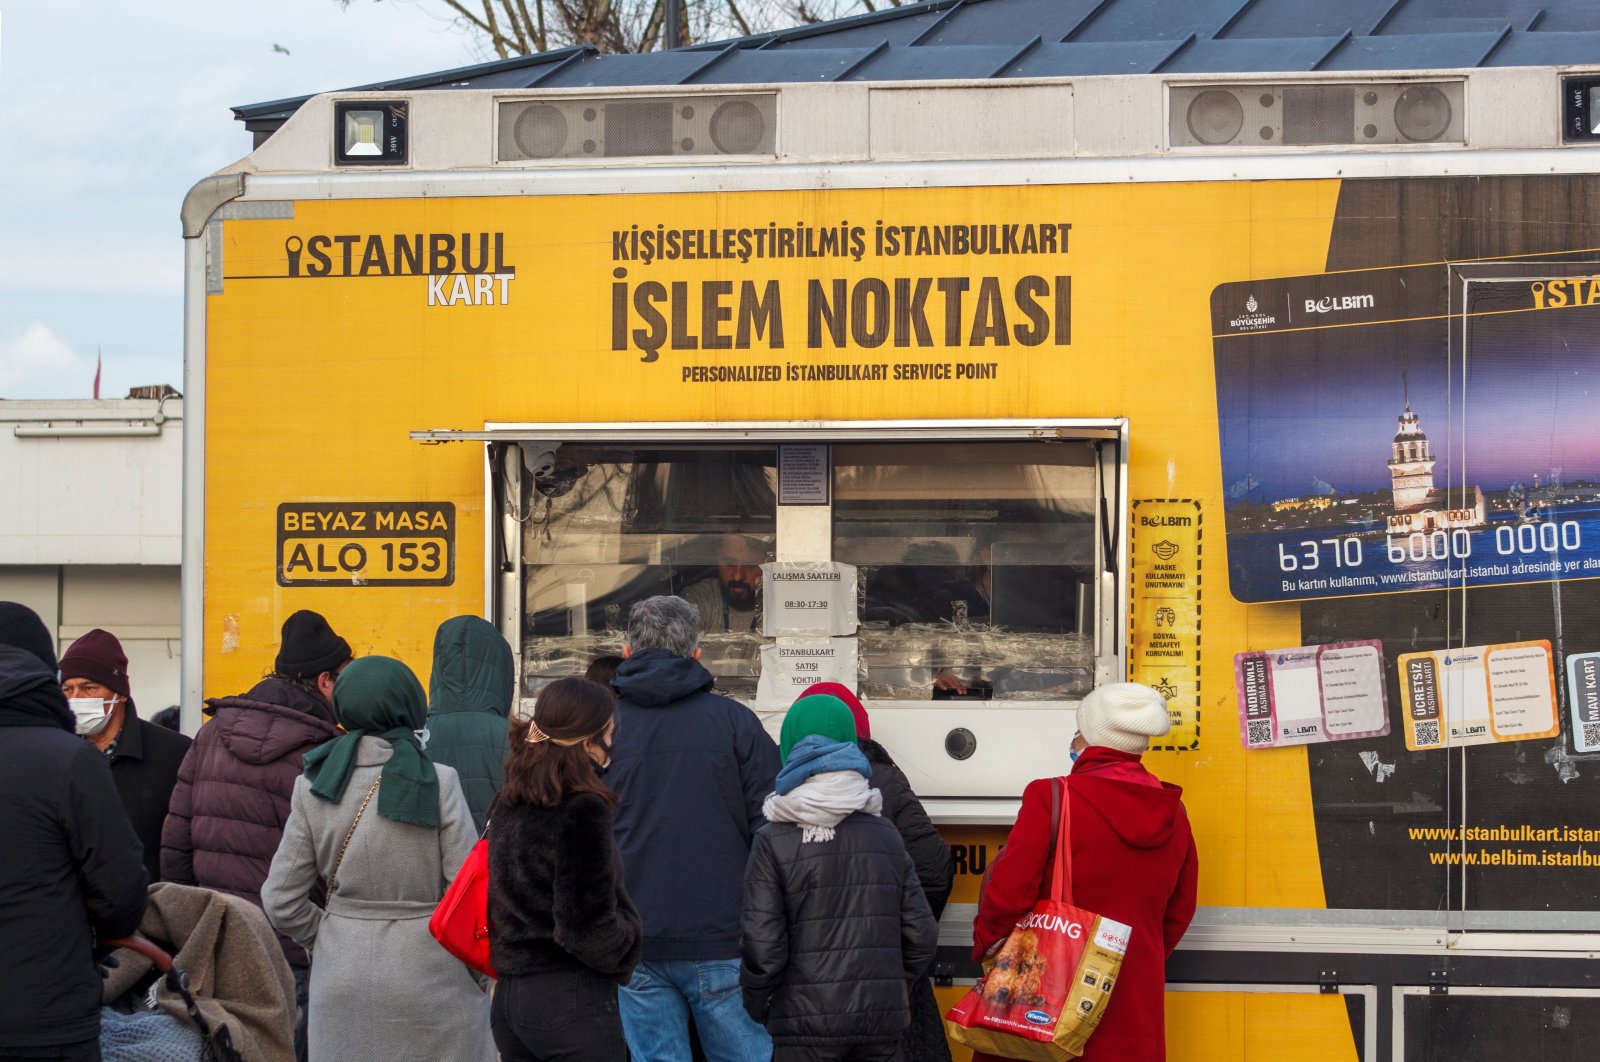 Keputusan IBB untuk menyesuaikan perjalanan Istanbulkart dilewatkan untuk didiskusikan